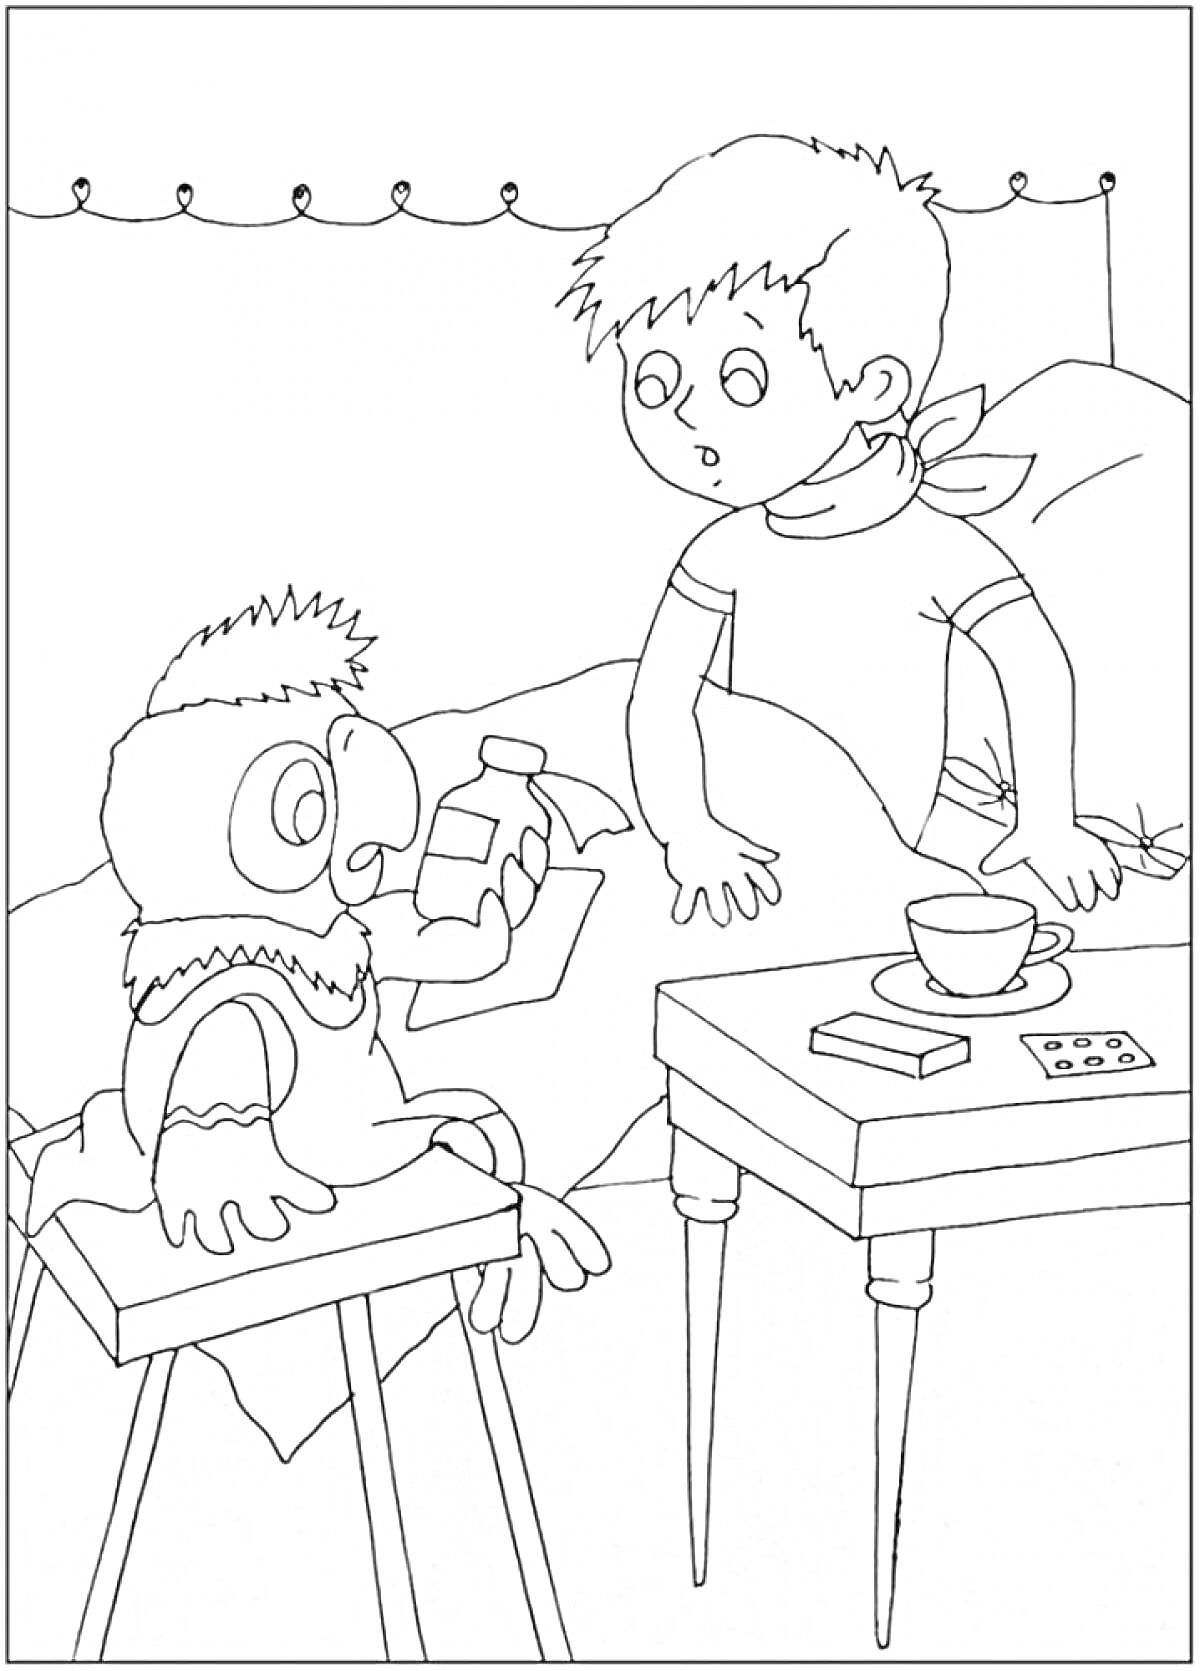 Попугай Кеша и мальчик в комнате, попугай держит бутылочку с лекарством, рядом стоит стол с чашкой, коробочкой и пачкой таблеток